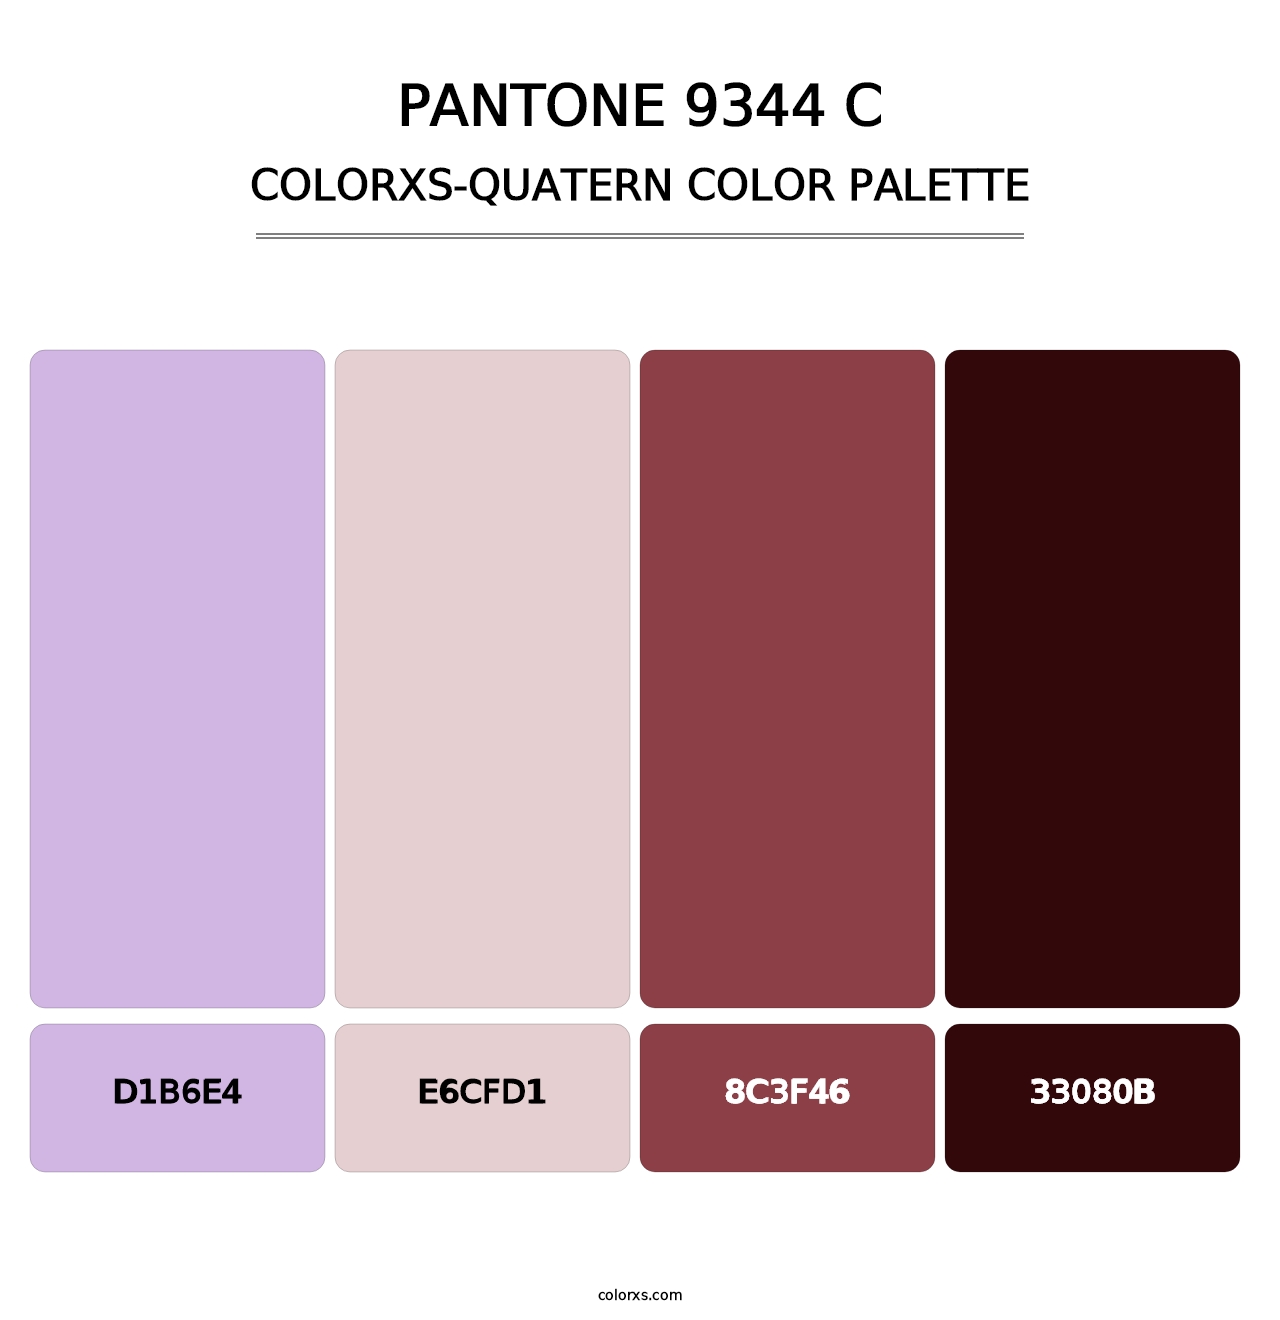 PANTONE 9344 C - Colorxs Quatern Palette